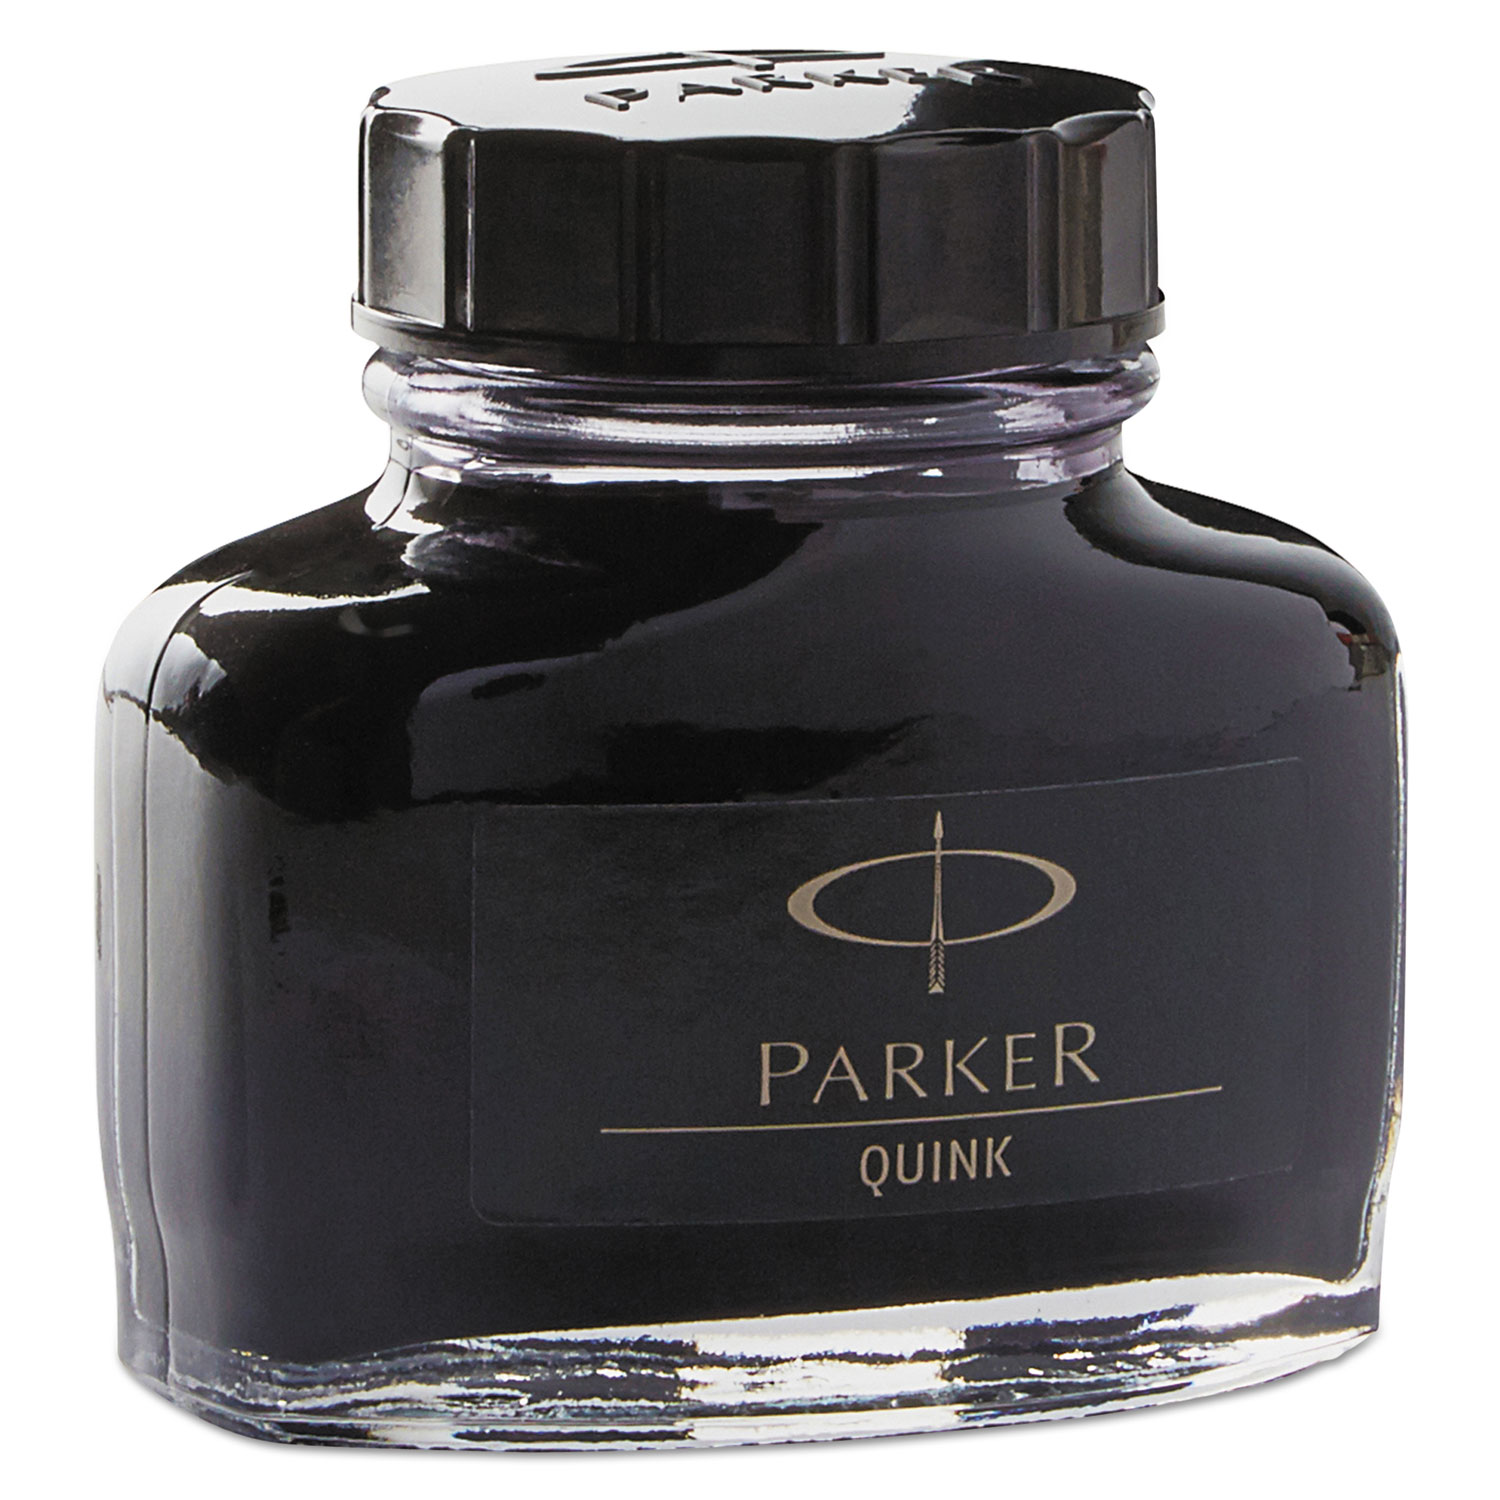 Super Quink Permanent Ink for Parker Pens, 2 oz Bottle, Black